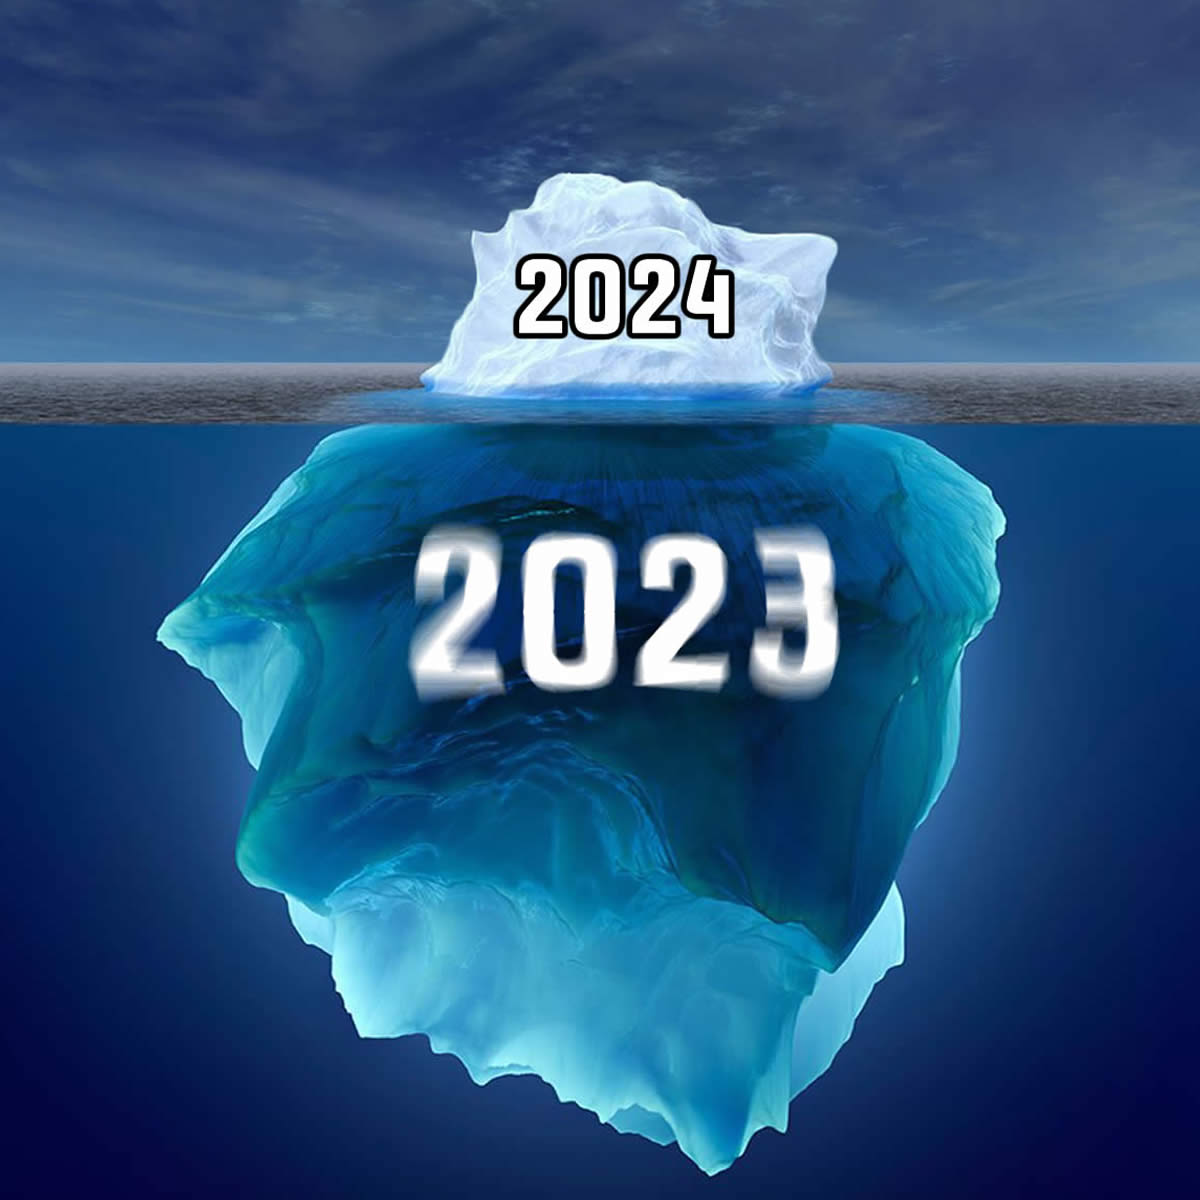 Foto di un iceberg con tutti gli anni passati ed il nuovo 2024